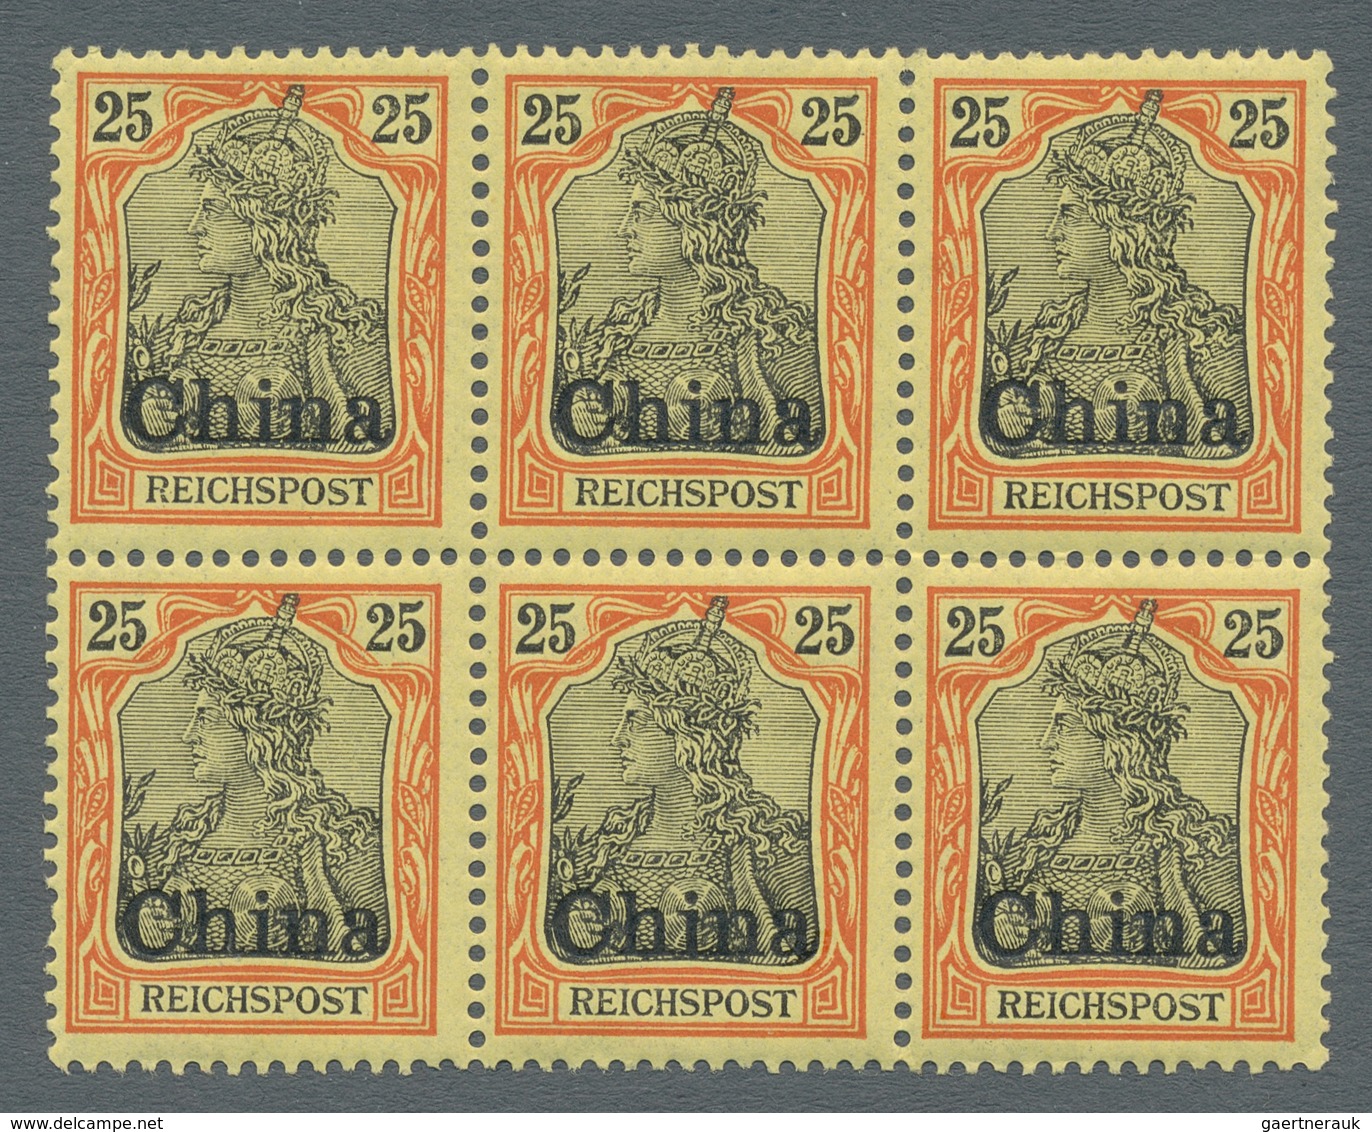 Deutsche Post In China: 1901, 25 Pfg. Germania Reichspost Mit Aufdruck CHINA Als Sechserblock (mittl - China (offices)